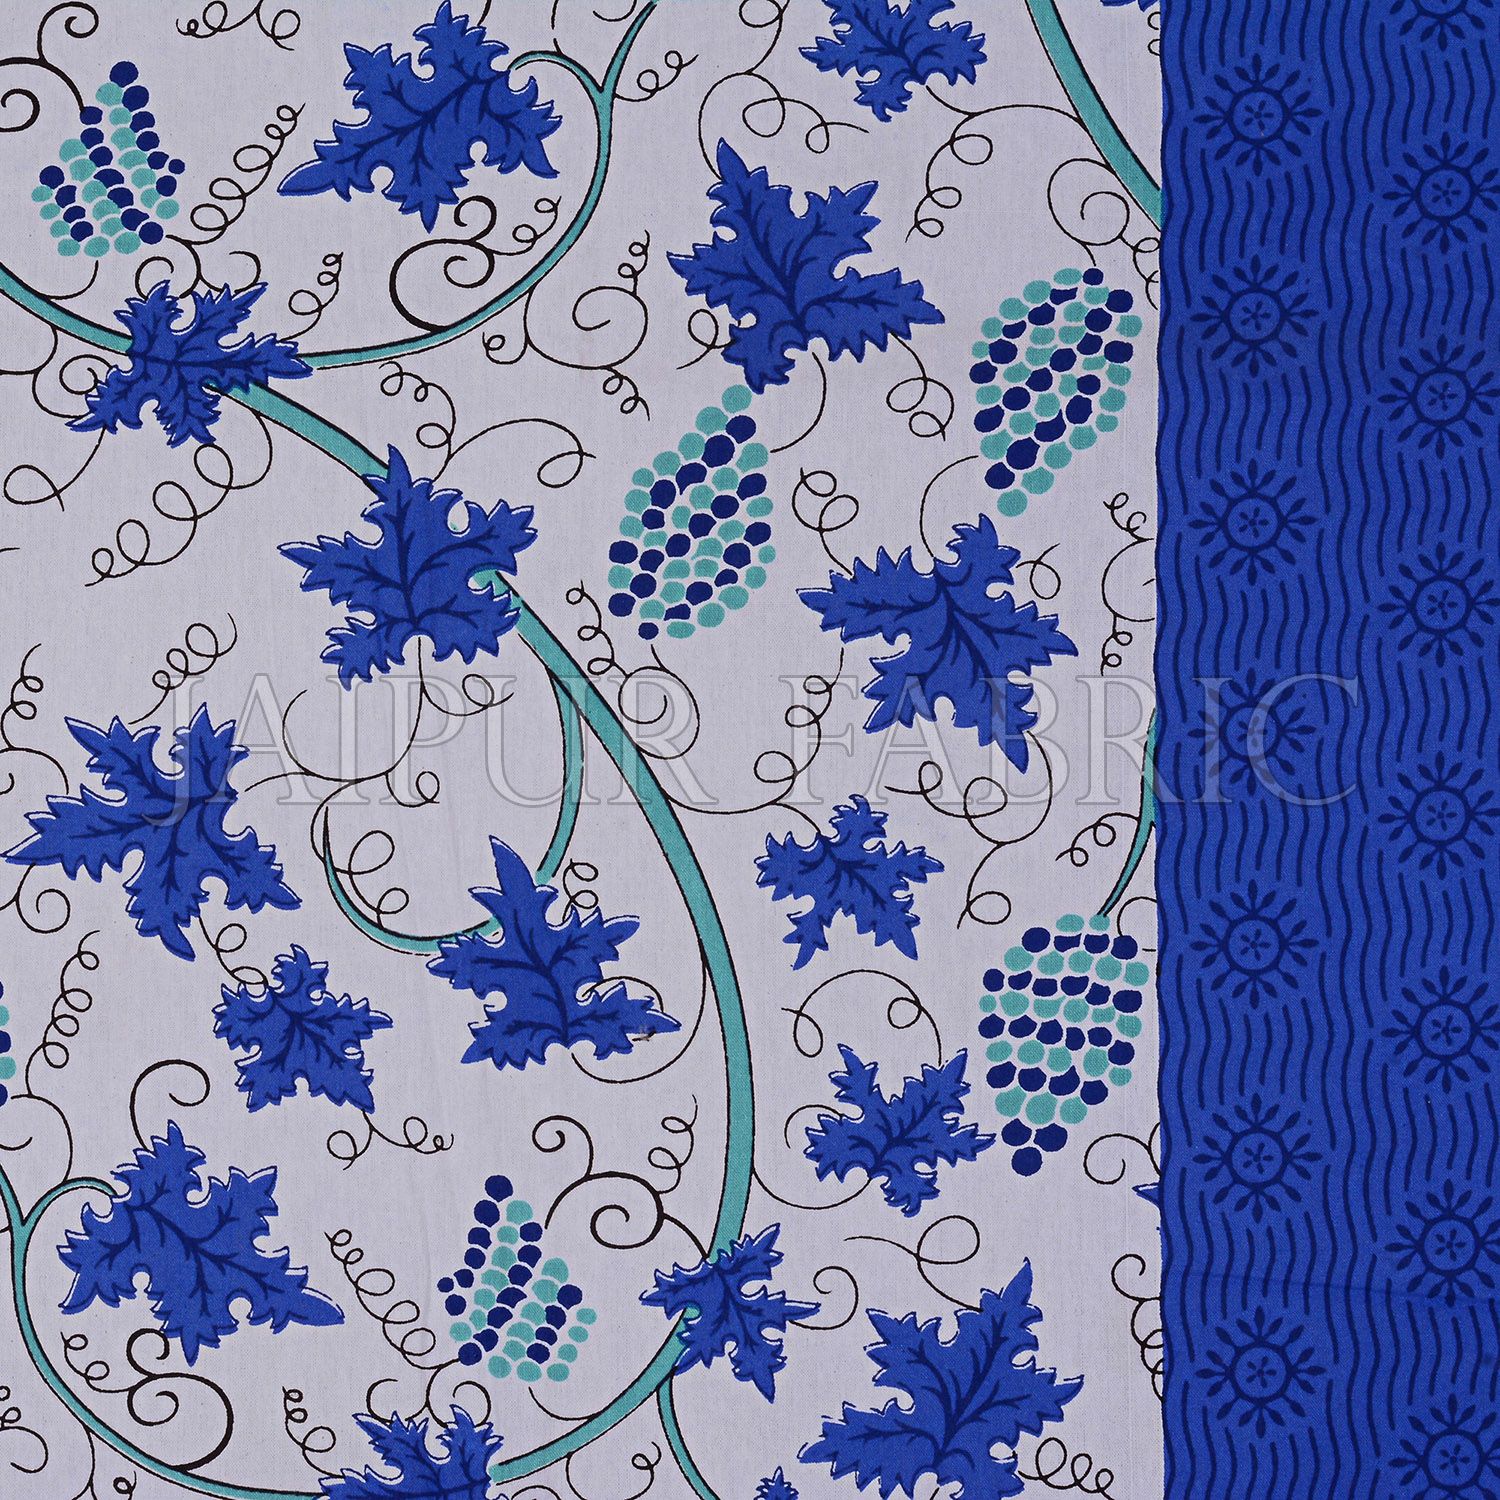 Blue Grape Designer Cotton Double Bed Sheet